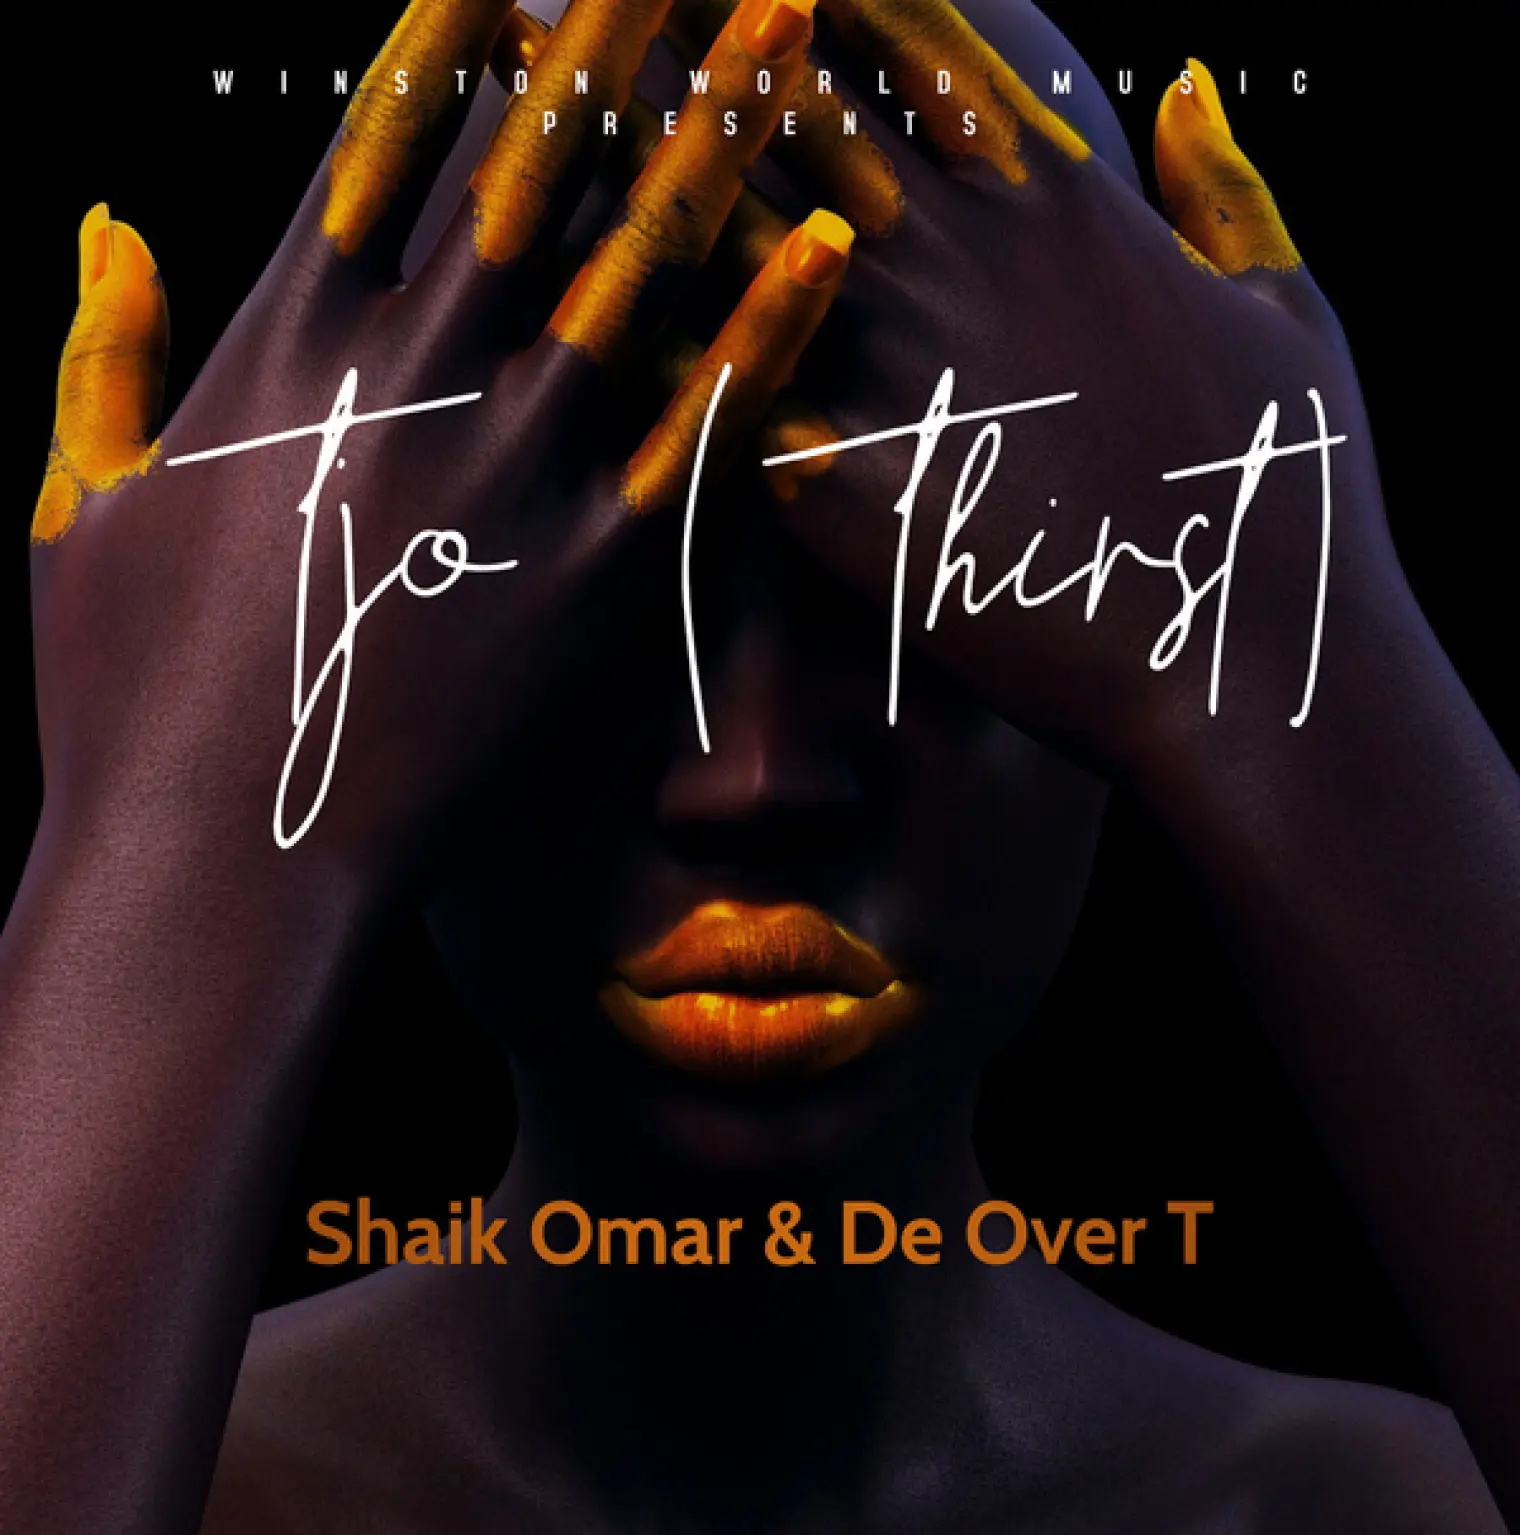 Tjo (Thirst) -  Shaik Omar 